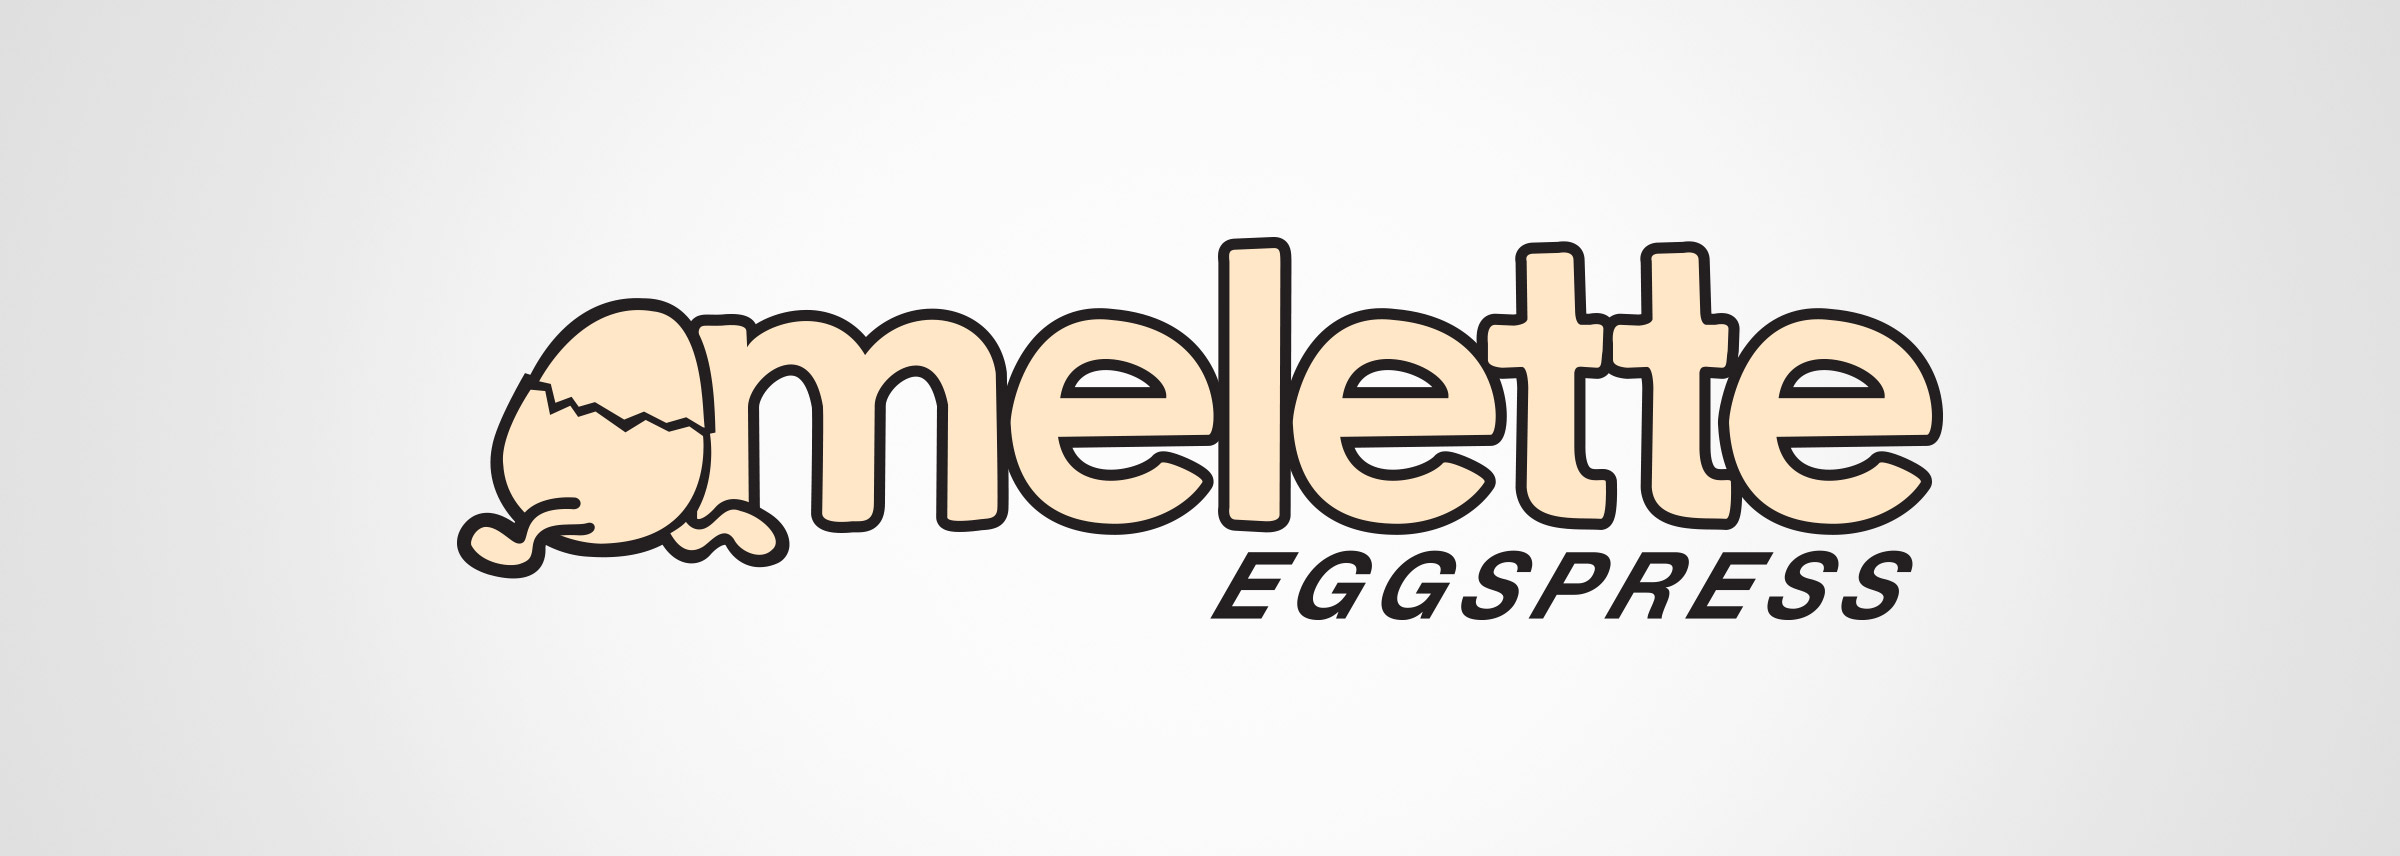 VL-Omelette